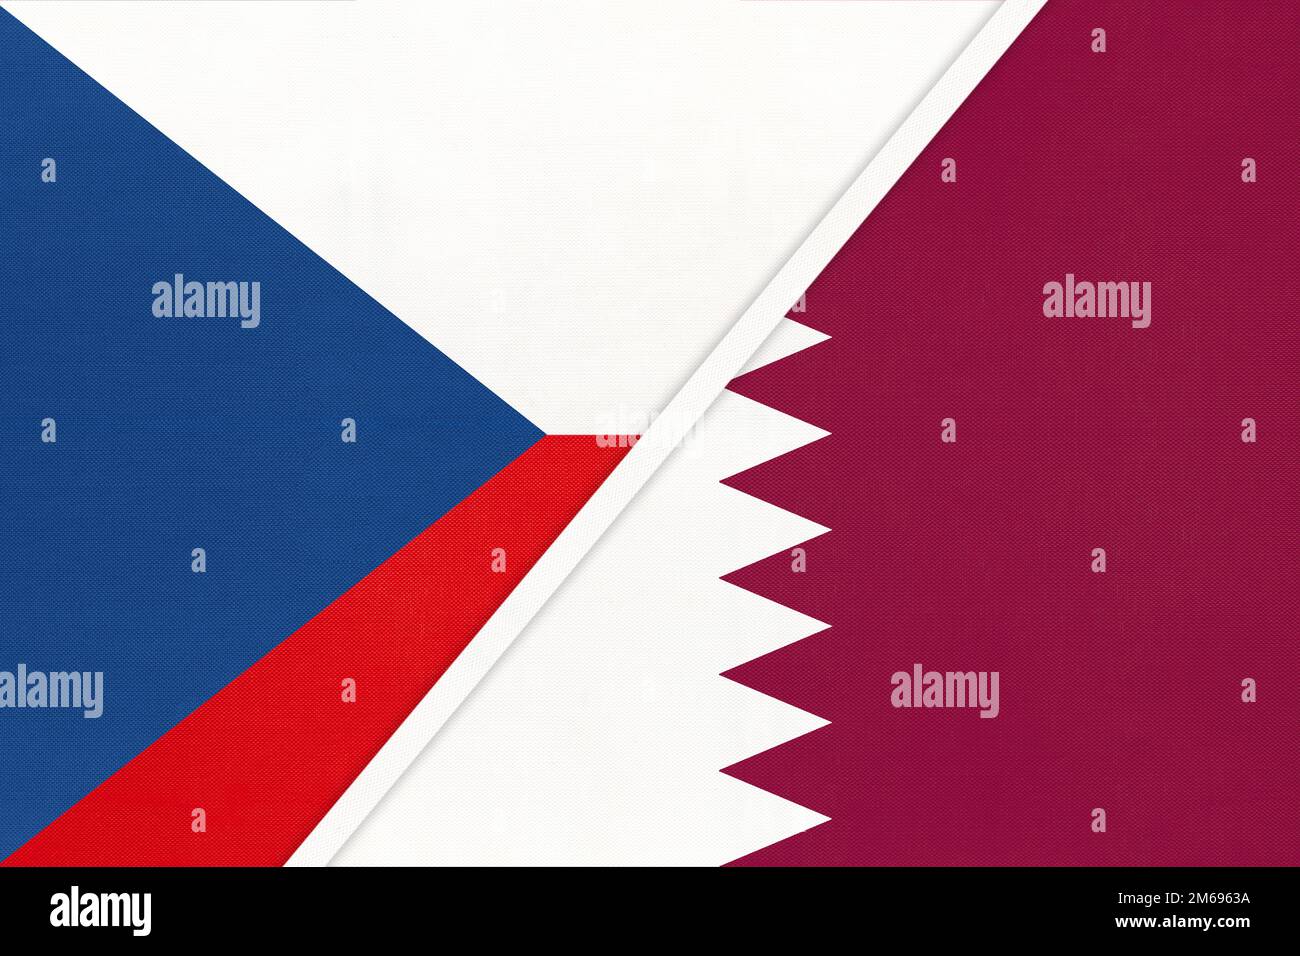 Repubblica Ceca e Qatar, simbolo del paese. Bandiera nazionale di Czechia vs Qatari. Relazioni e partenariato tra due paesi. Foto Stock